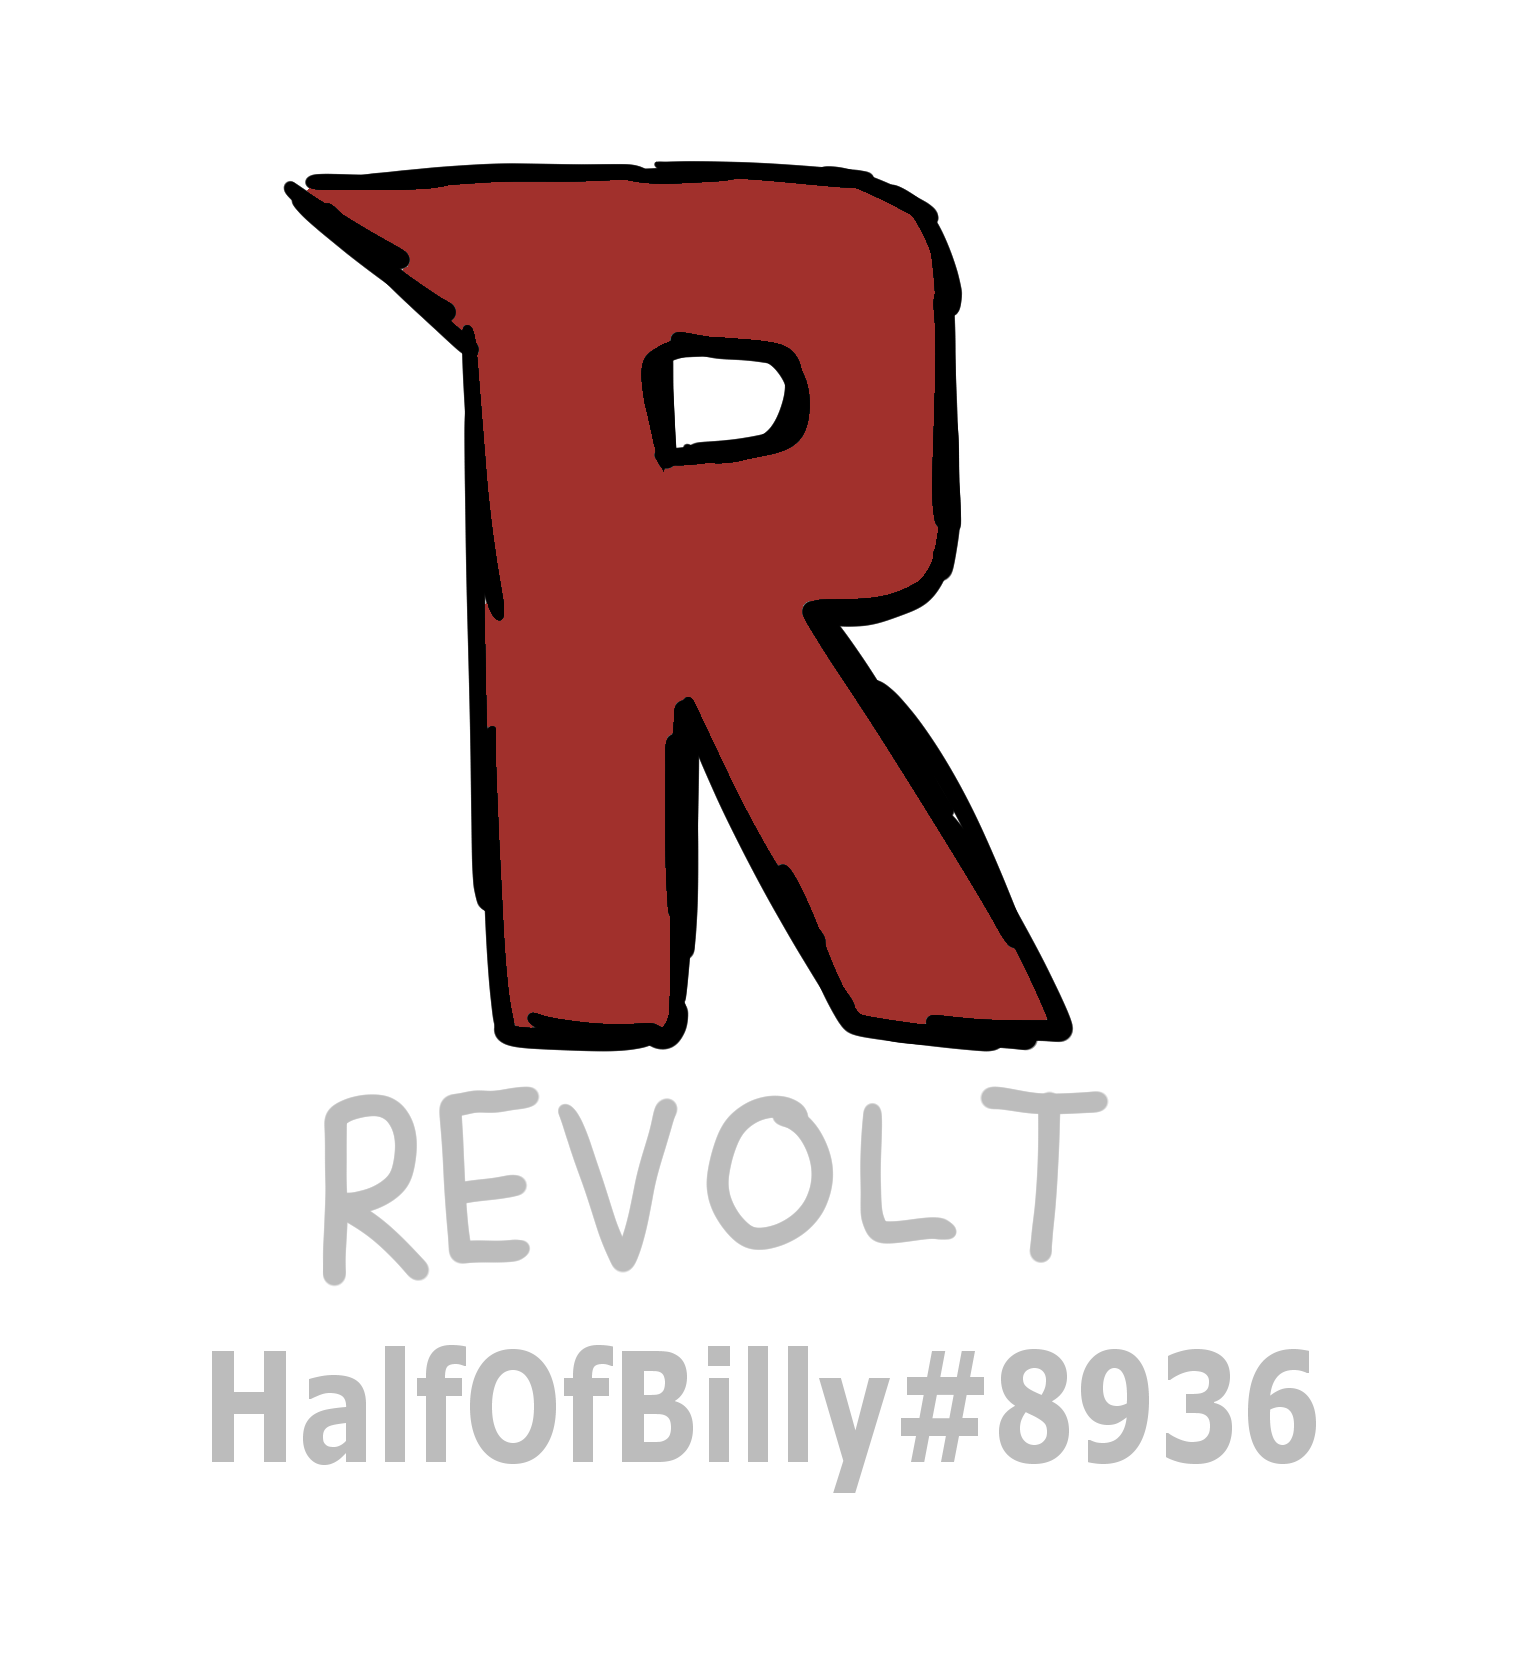 Revolt chat link: HalfOfBilly#8936